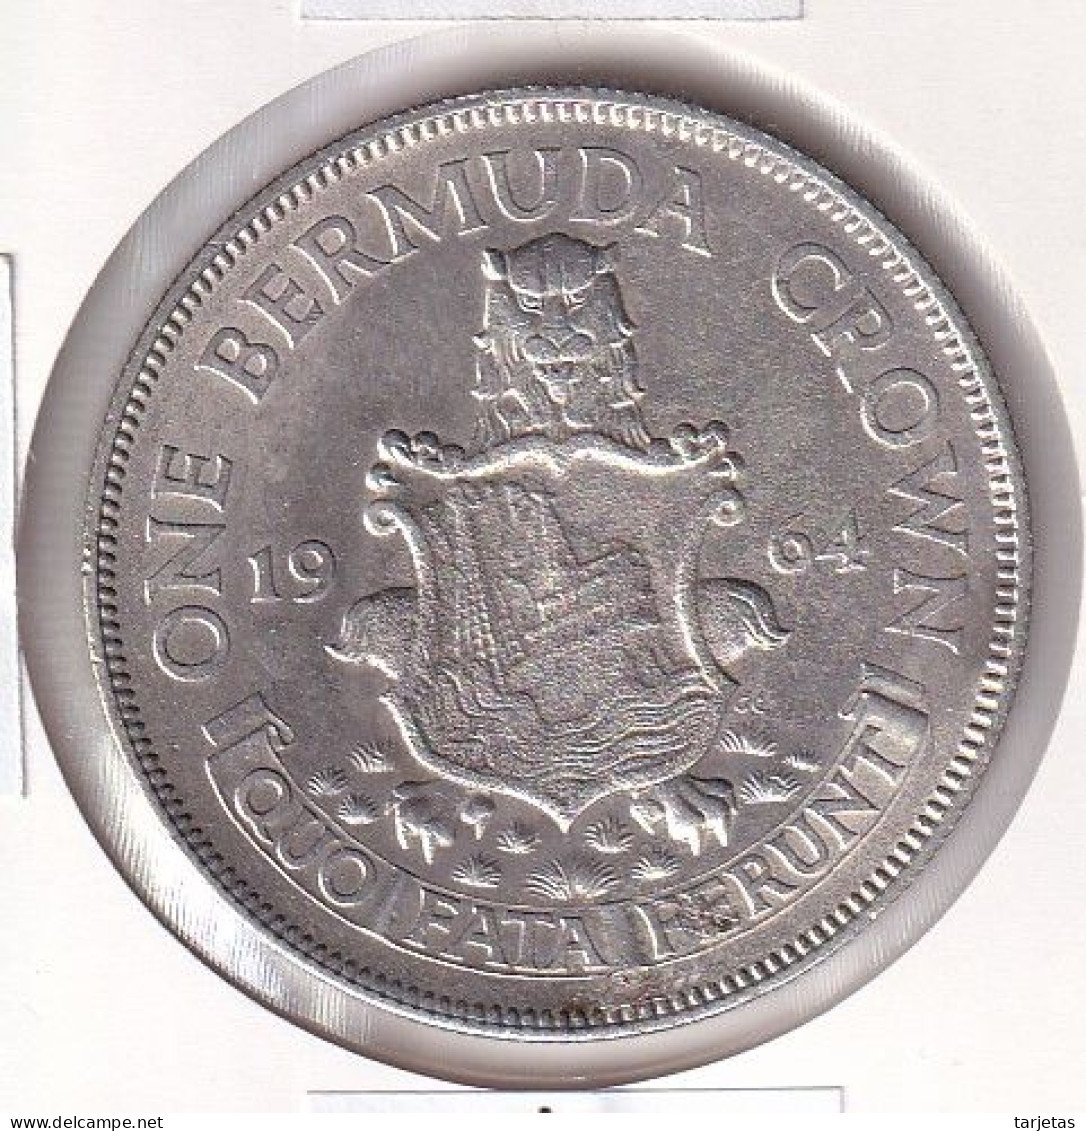 MONEDA DE PLATA DE BERMUDAS DE 1 CROWN DEL AÑO 1964 (SILVER-ARGENT) - Bermuda